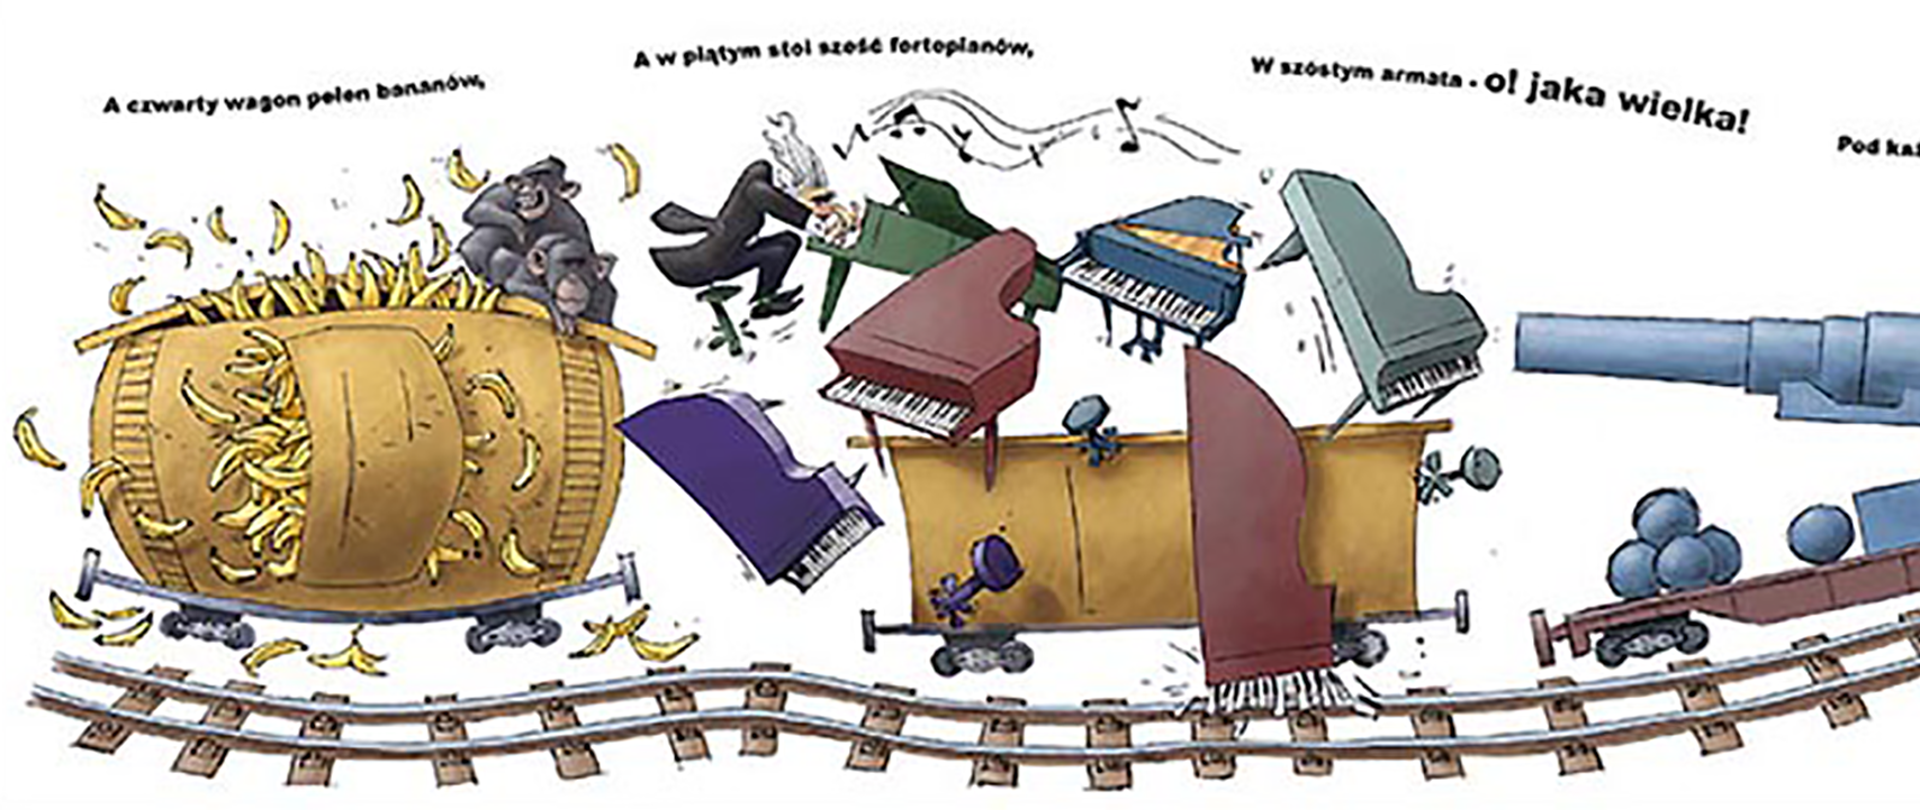 Ilustracja do opowiadania Juliana Tuwima "Lokomotywa" przedstawia tor kolejowy, wagony, fortepiany, armatę.